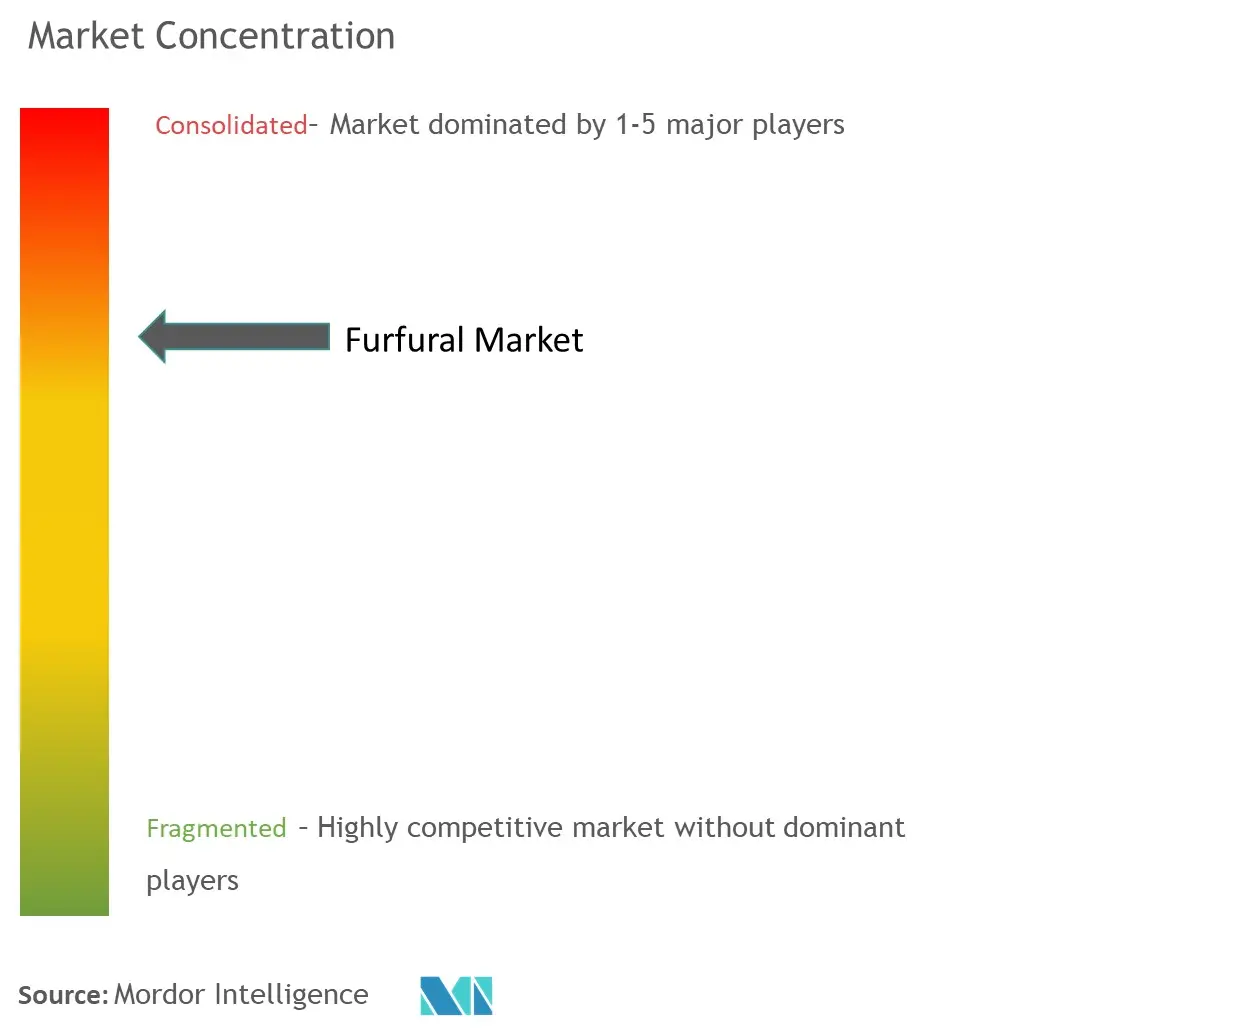 Furfural Market Concentration